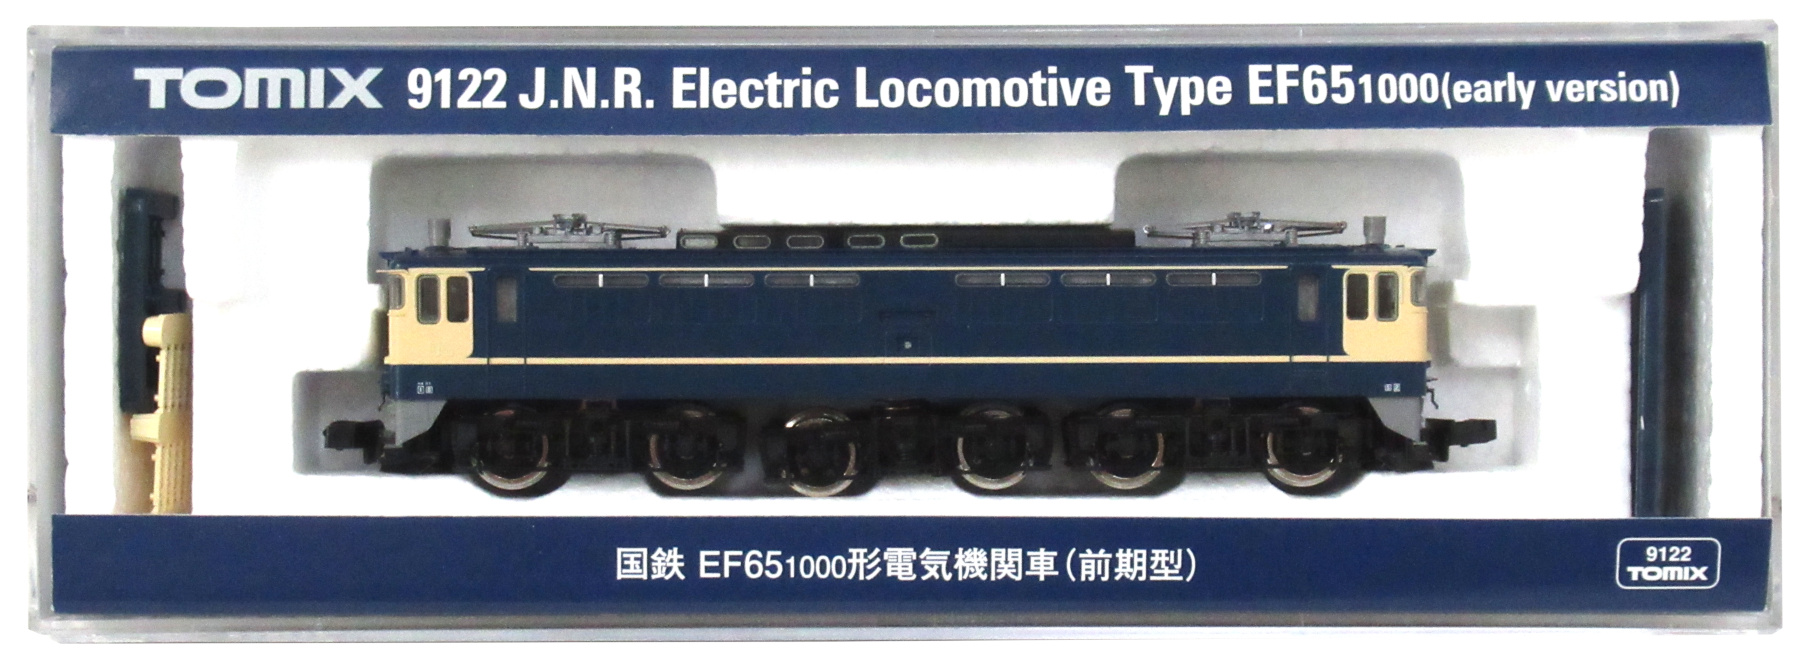 公式]鉄道模型(JR・国鉄 形式別(N)、電気機関車、EF65)カテゴリ